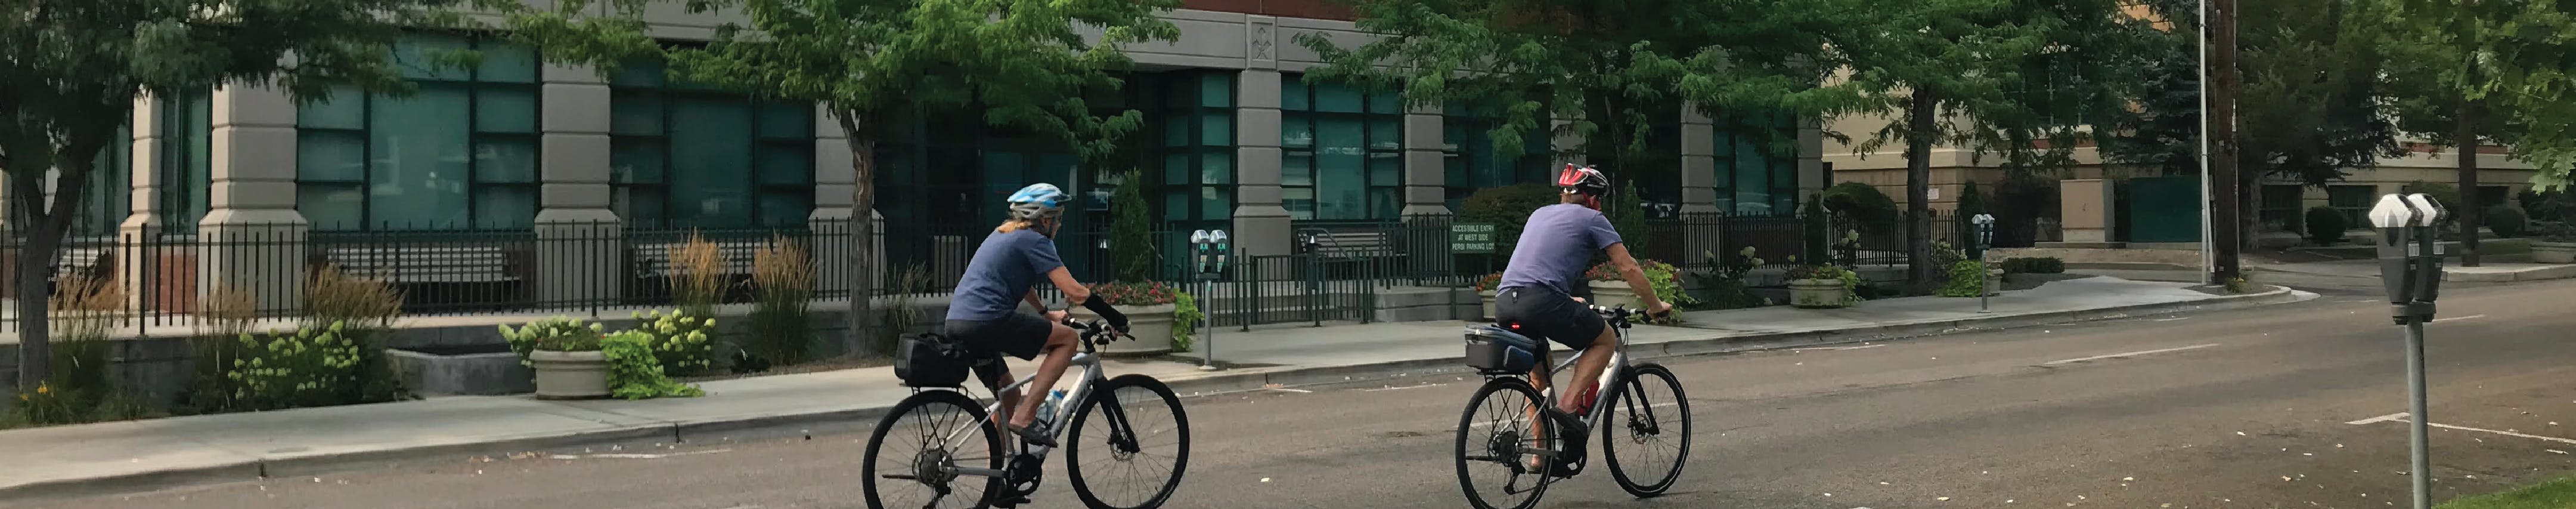 Two bicyclists biking on street.